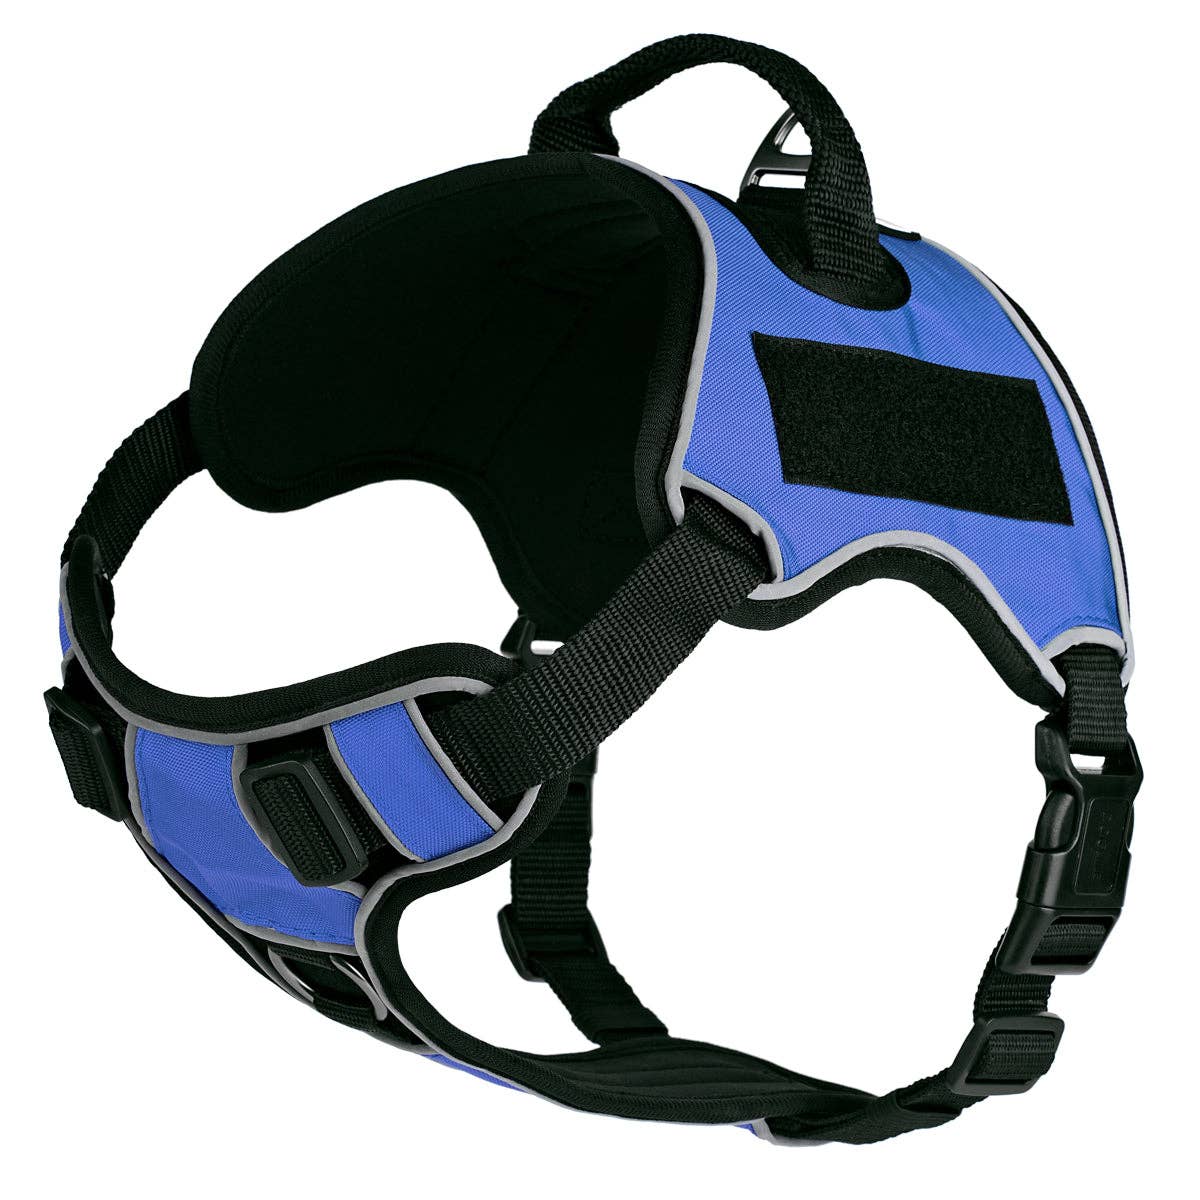 Dogline Quest Multi-Purpose Dog Harness, Blue, 15-18”